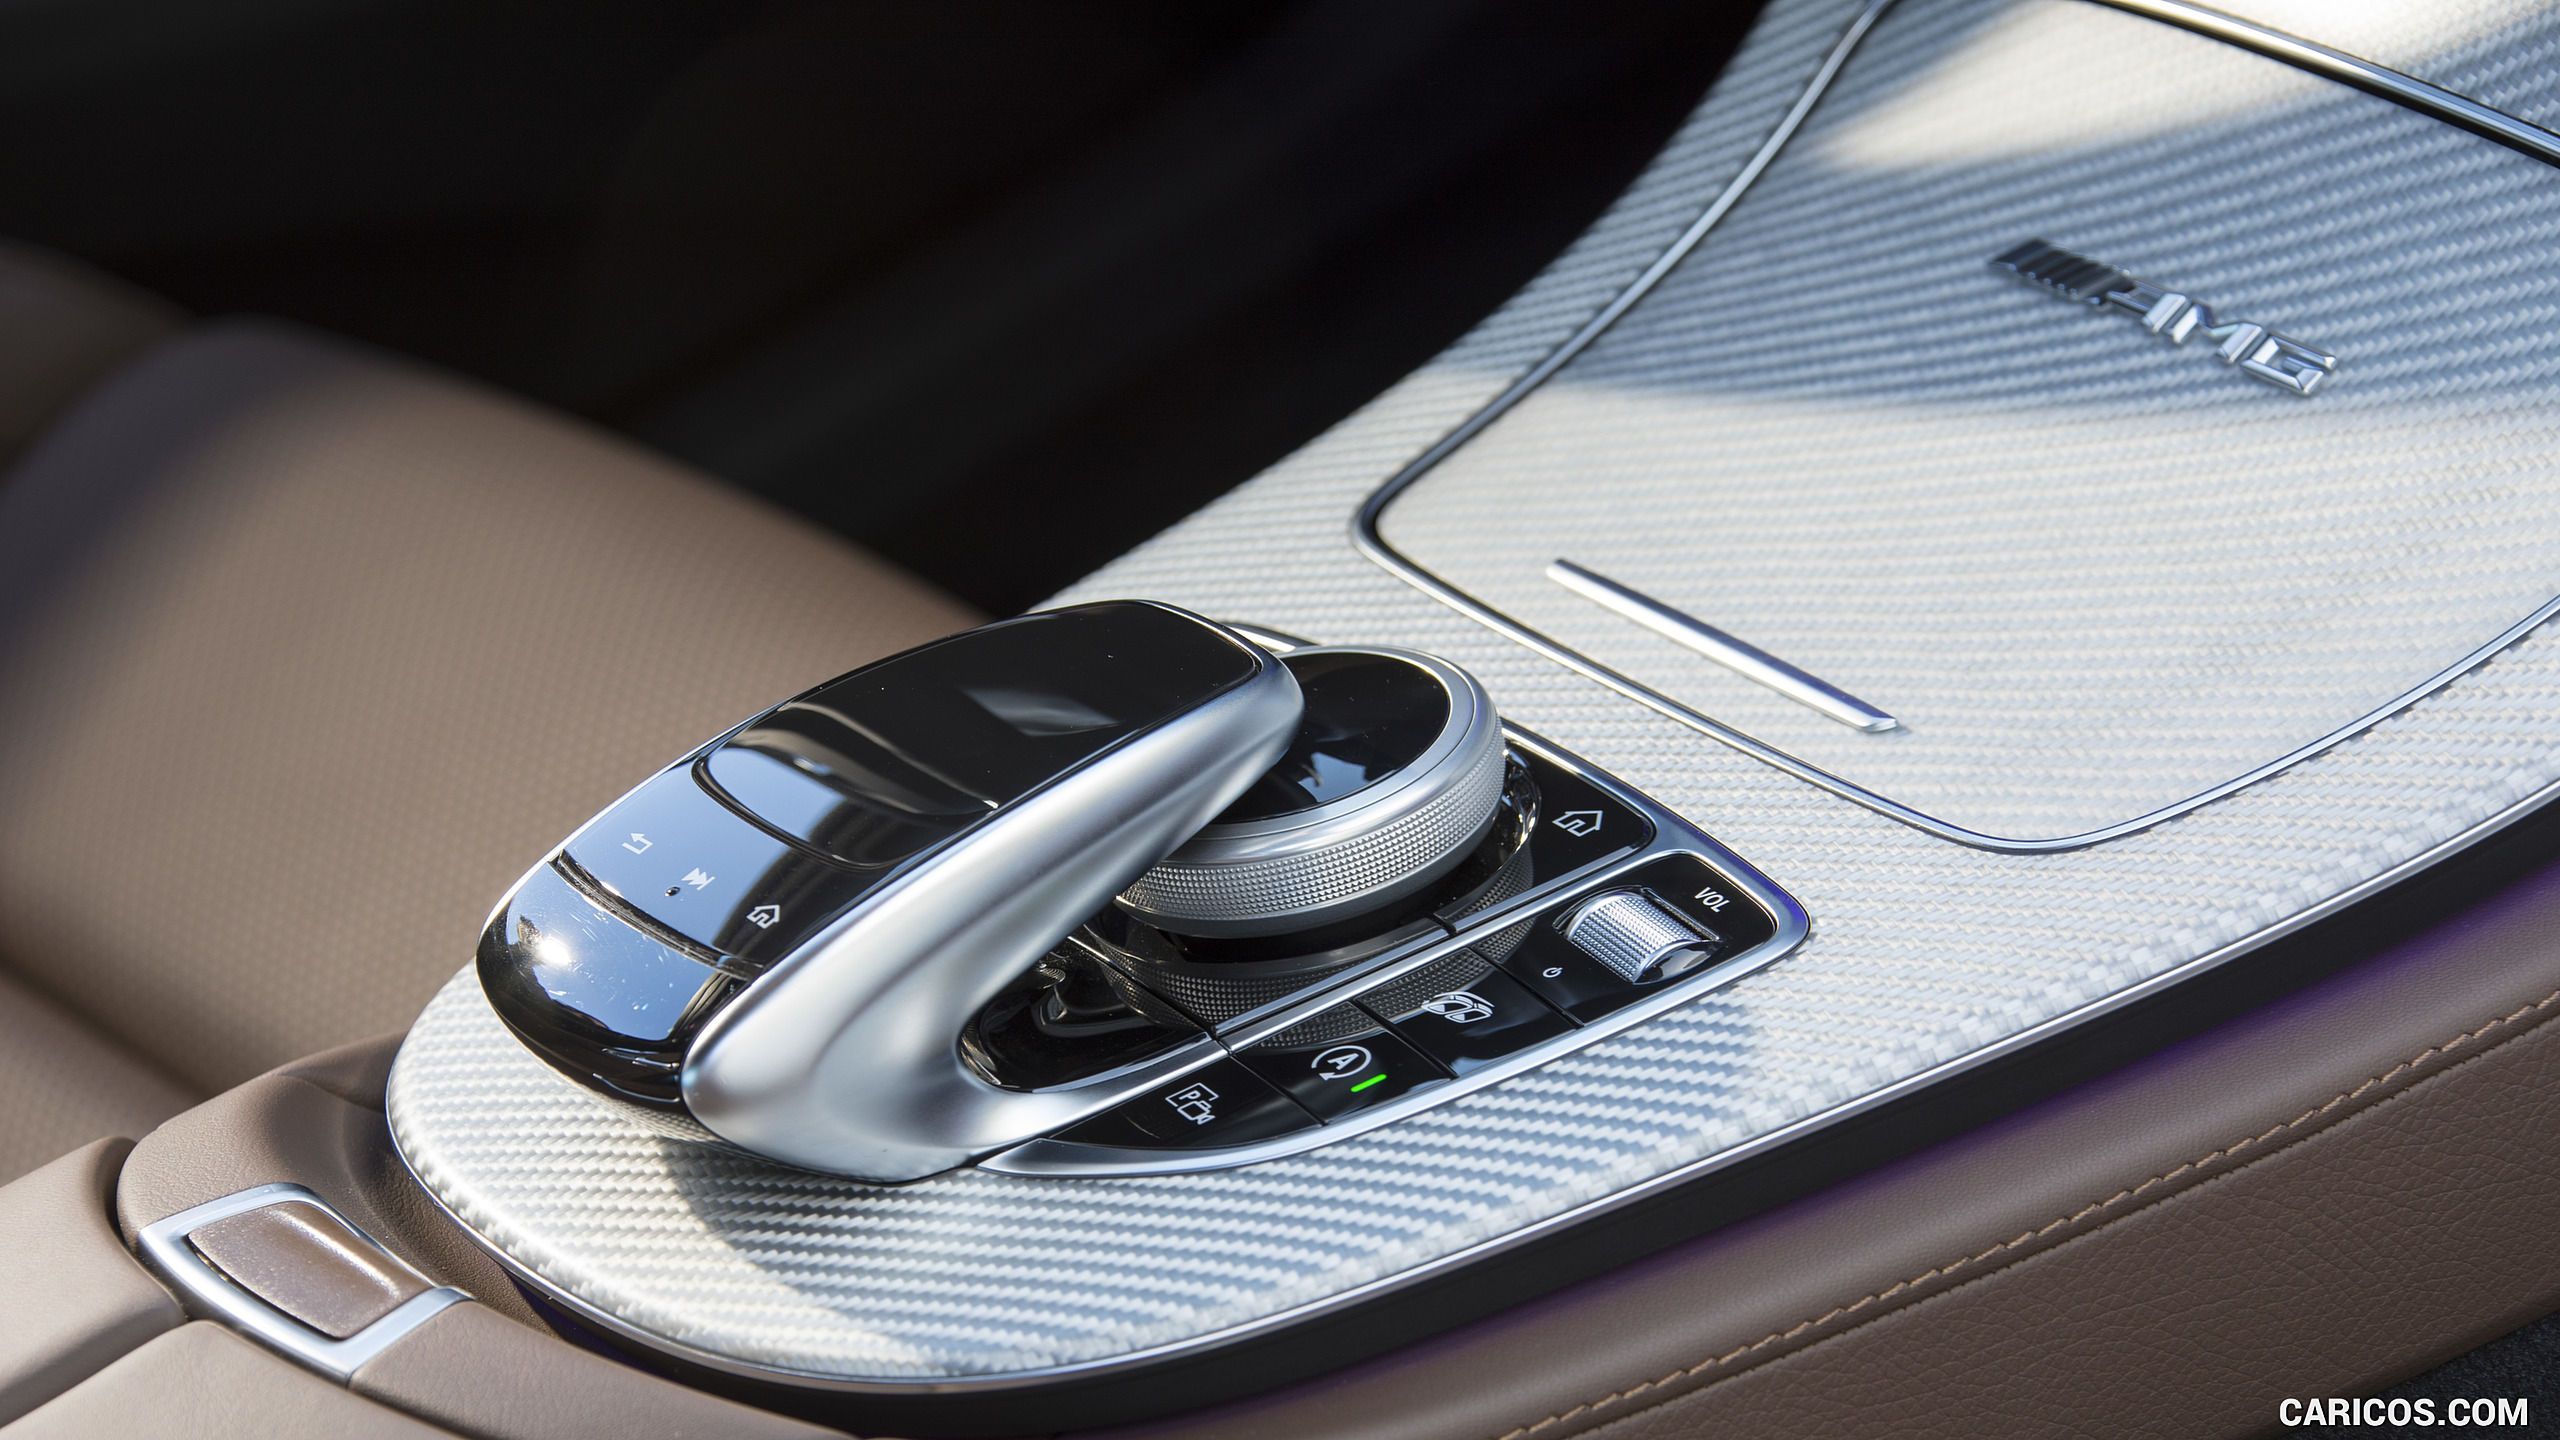 2018 Mercedes-AMG E63 S 4MATIC+ - Interior, Controls, #250 of 323